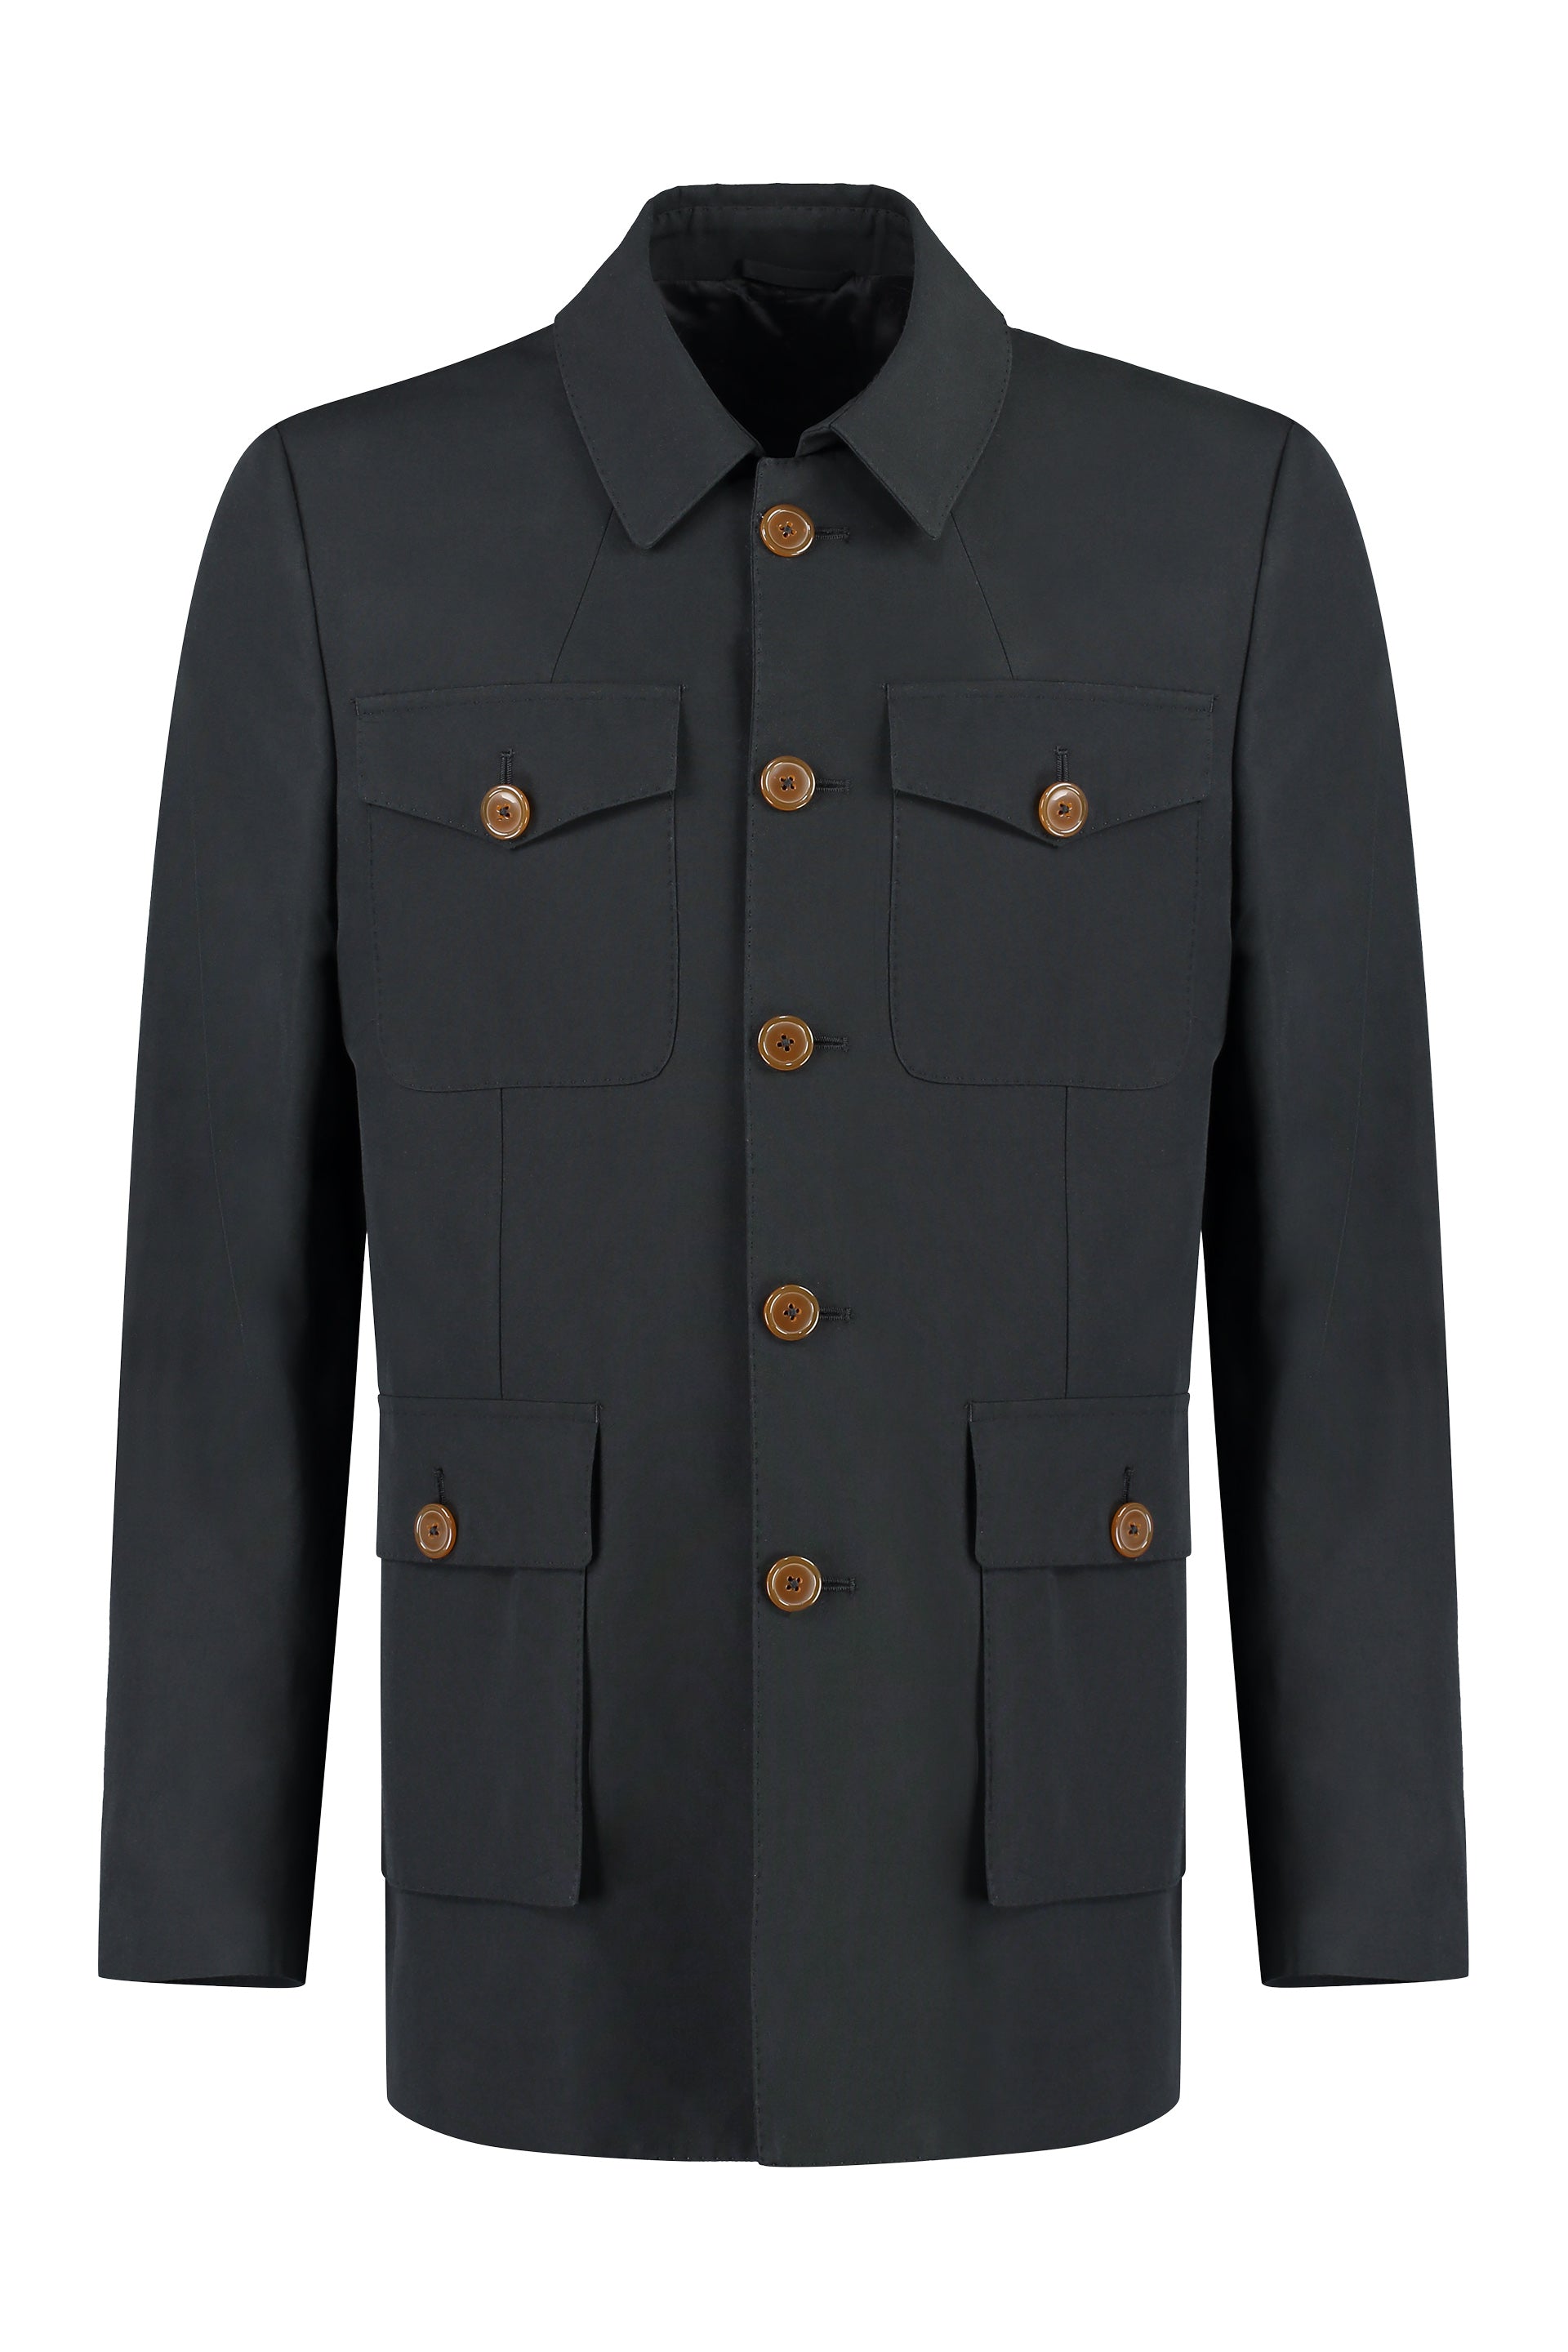 Vivienne Westwood Stylish Black Button Front Cotton Jacket For Men